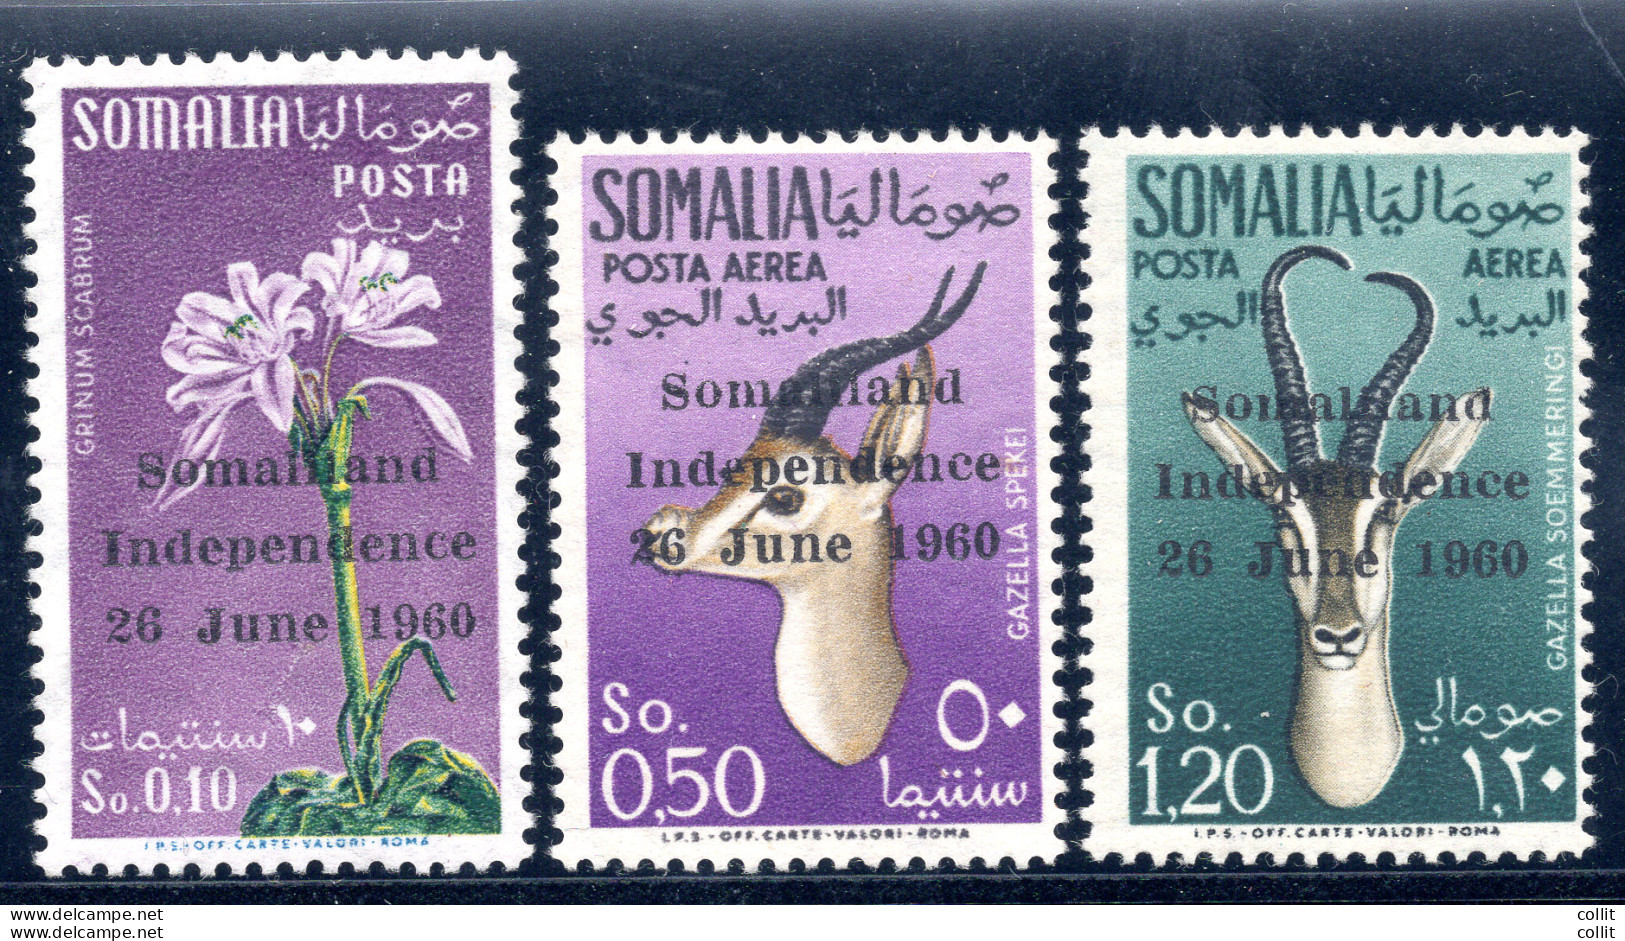 Somalia Indipendente - Soprastampati Somaliland Indipendence 26 June 1960 - Somalia